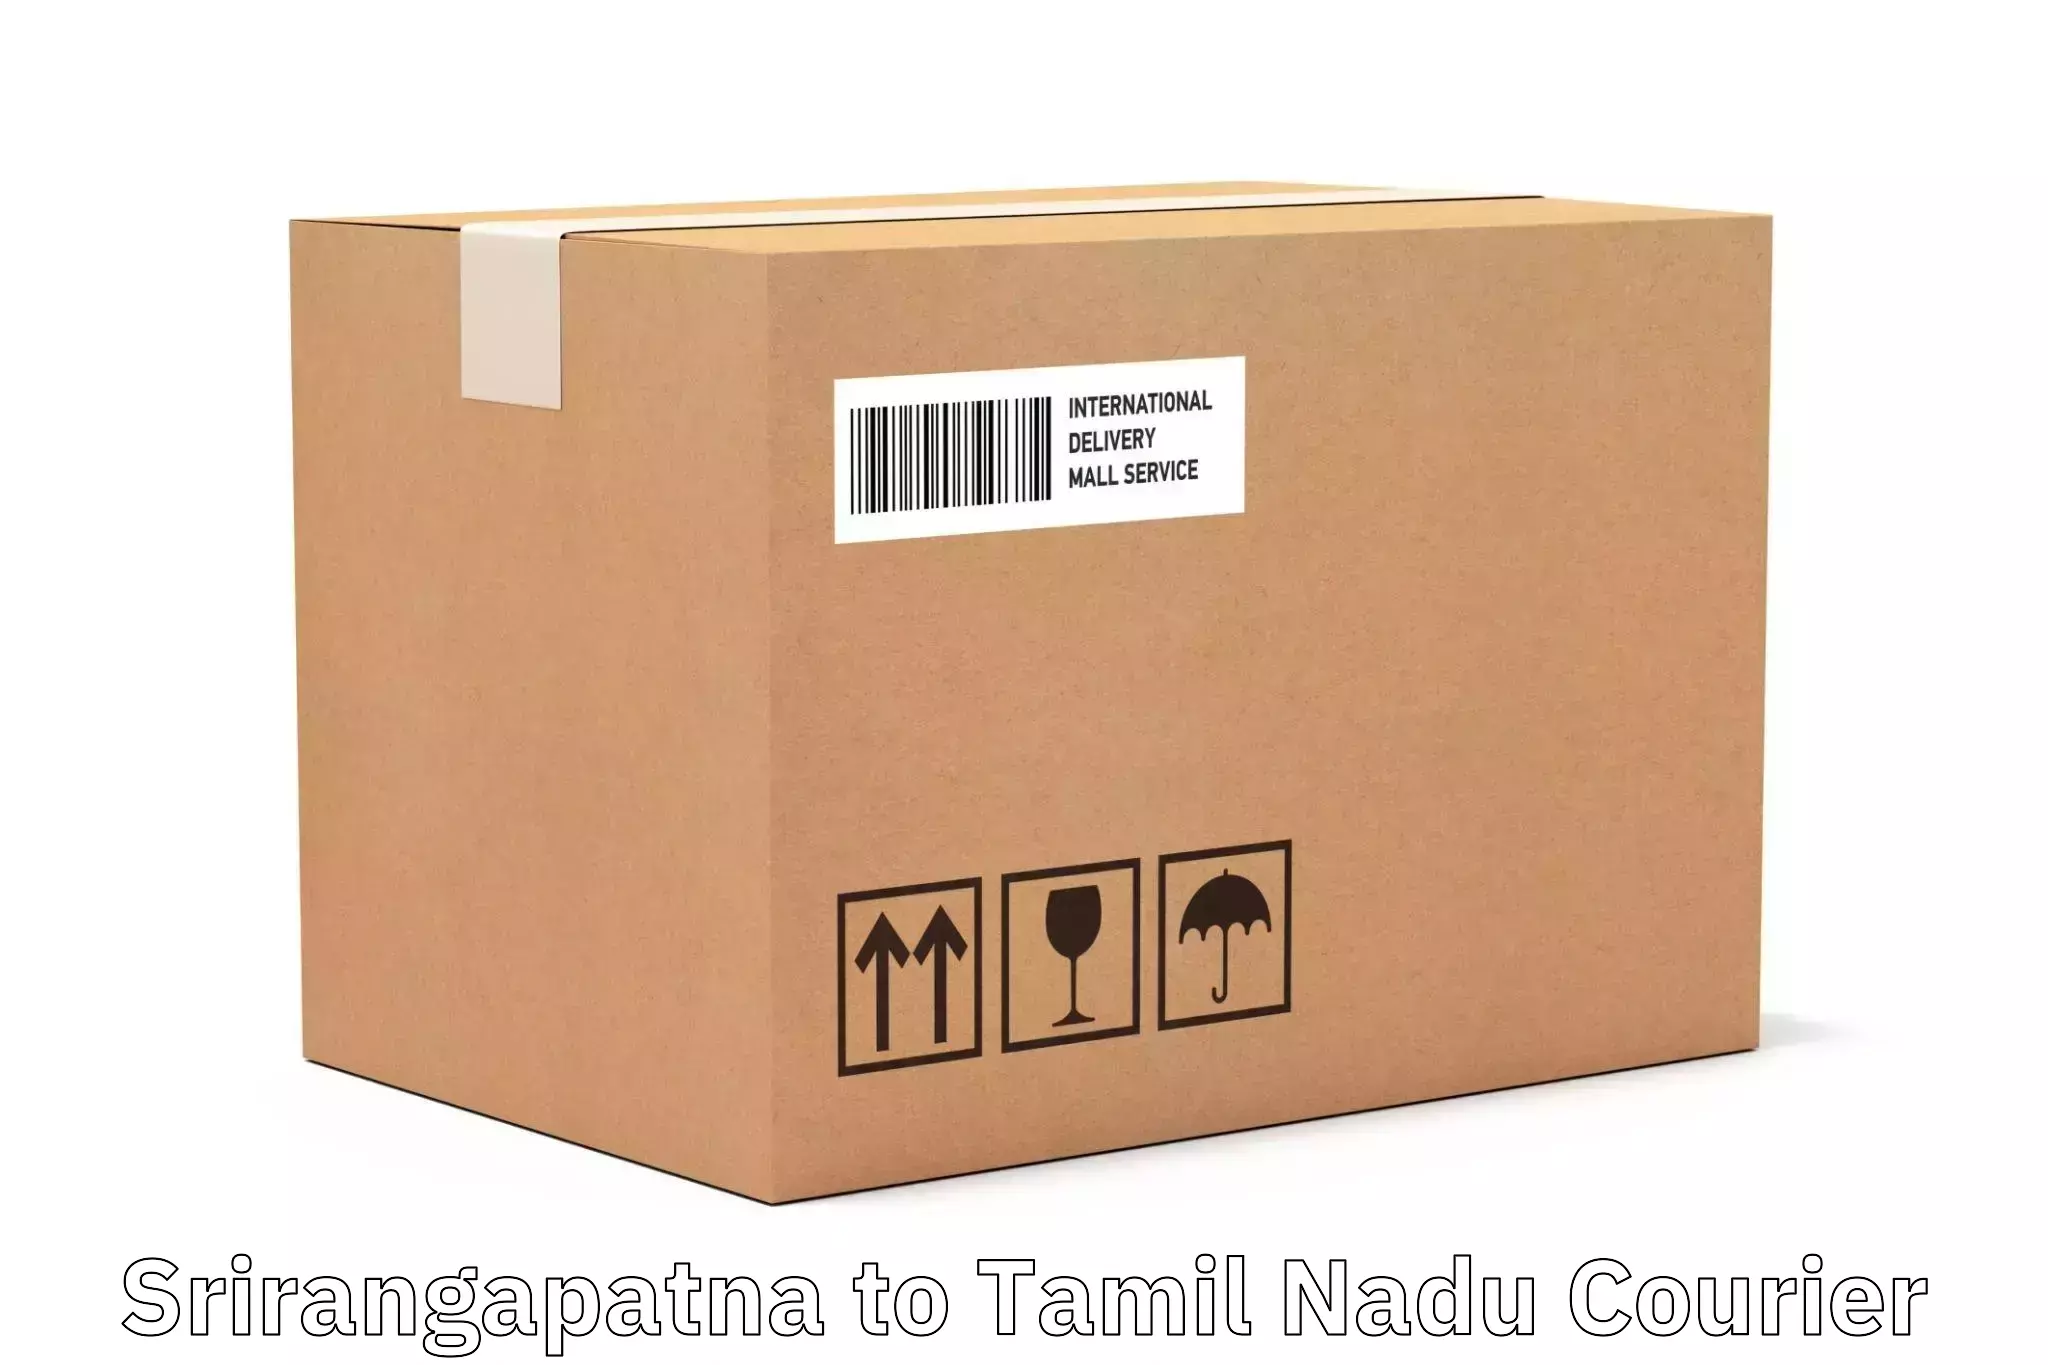 Custom courier packages Srirangapatna to Muthukulathur